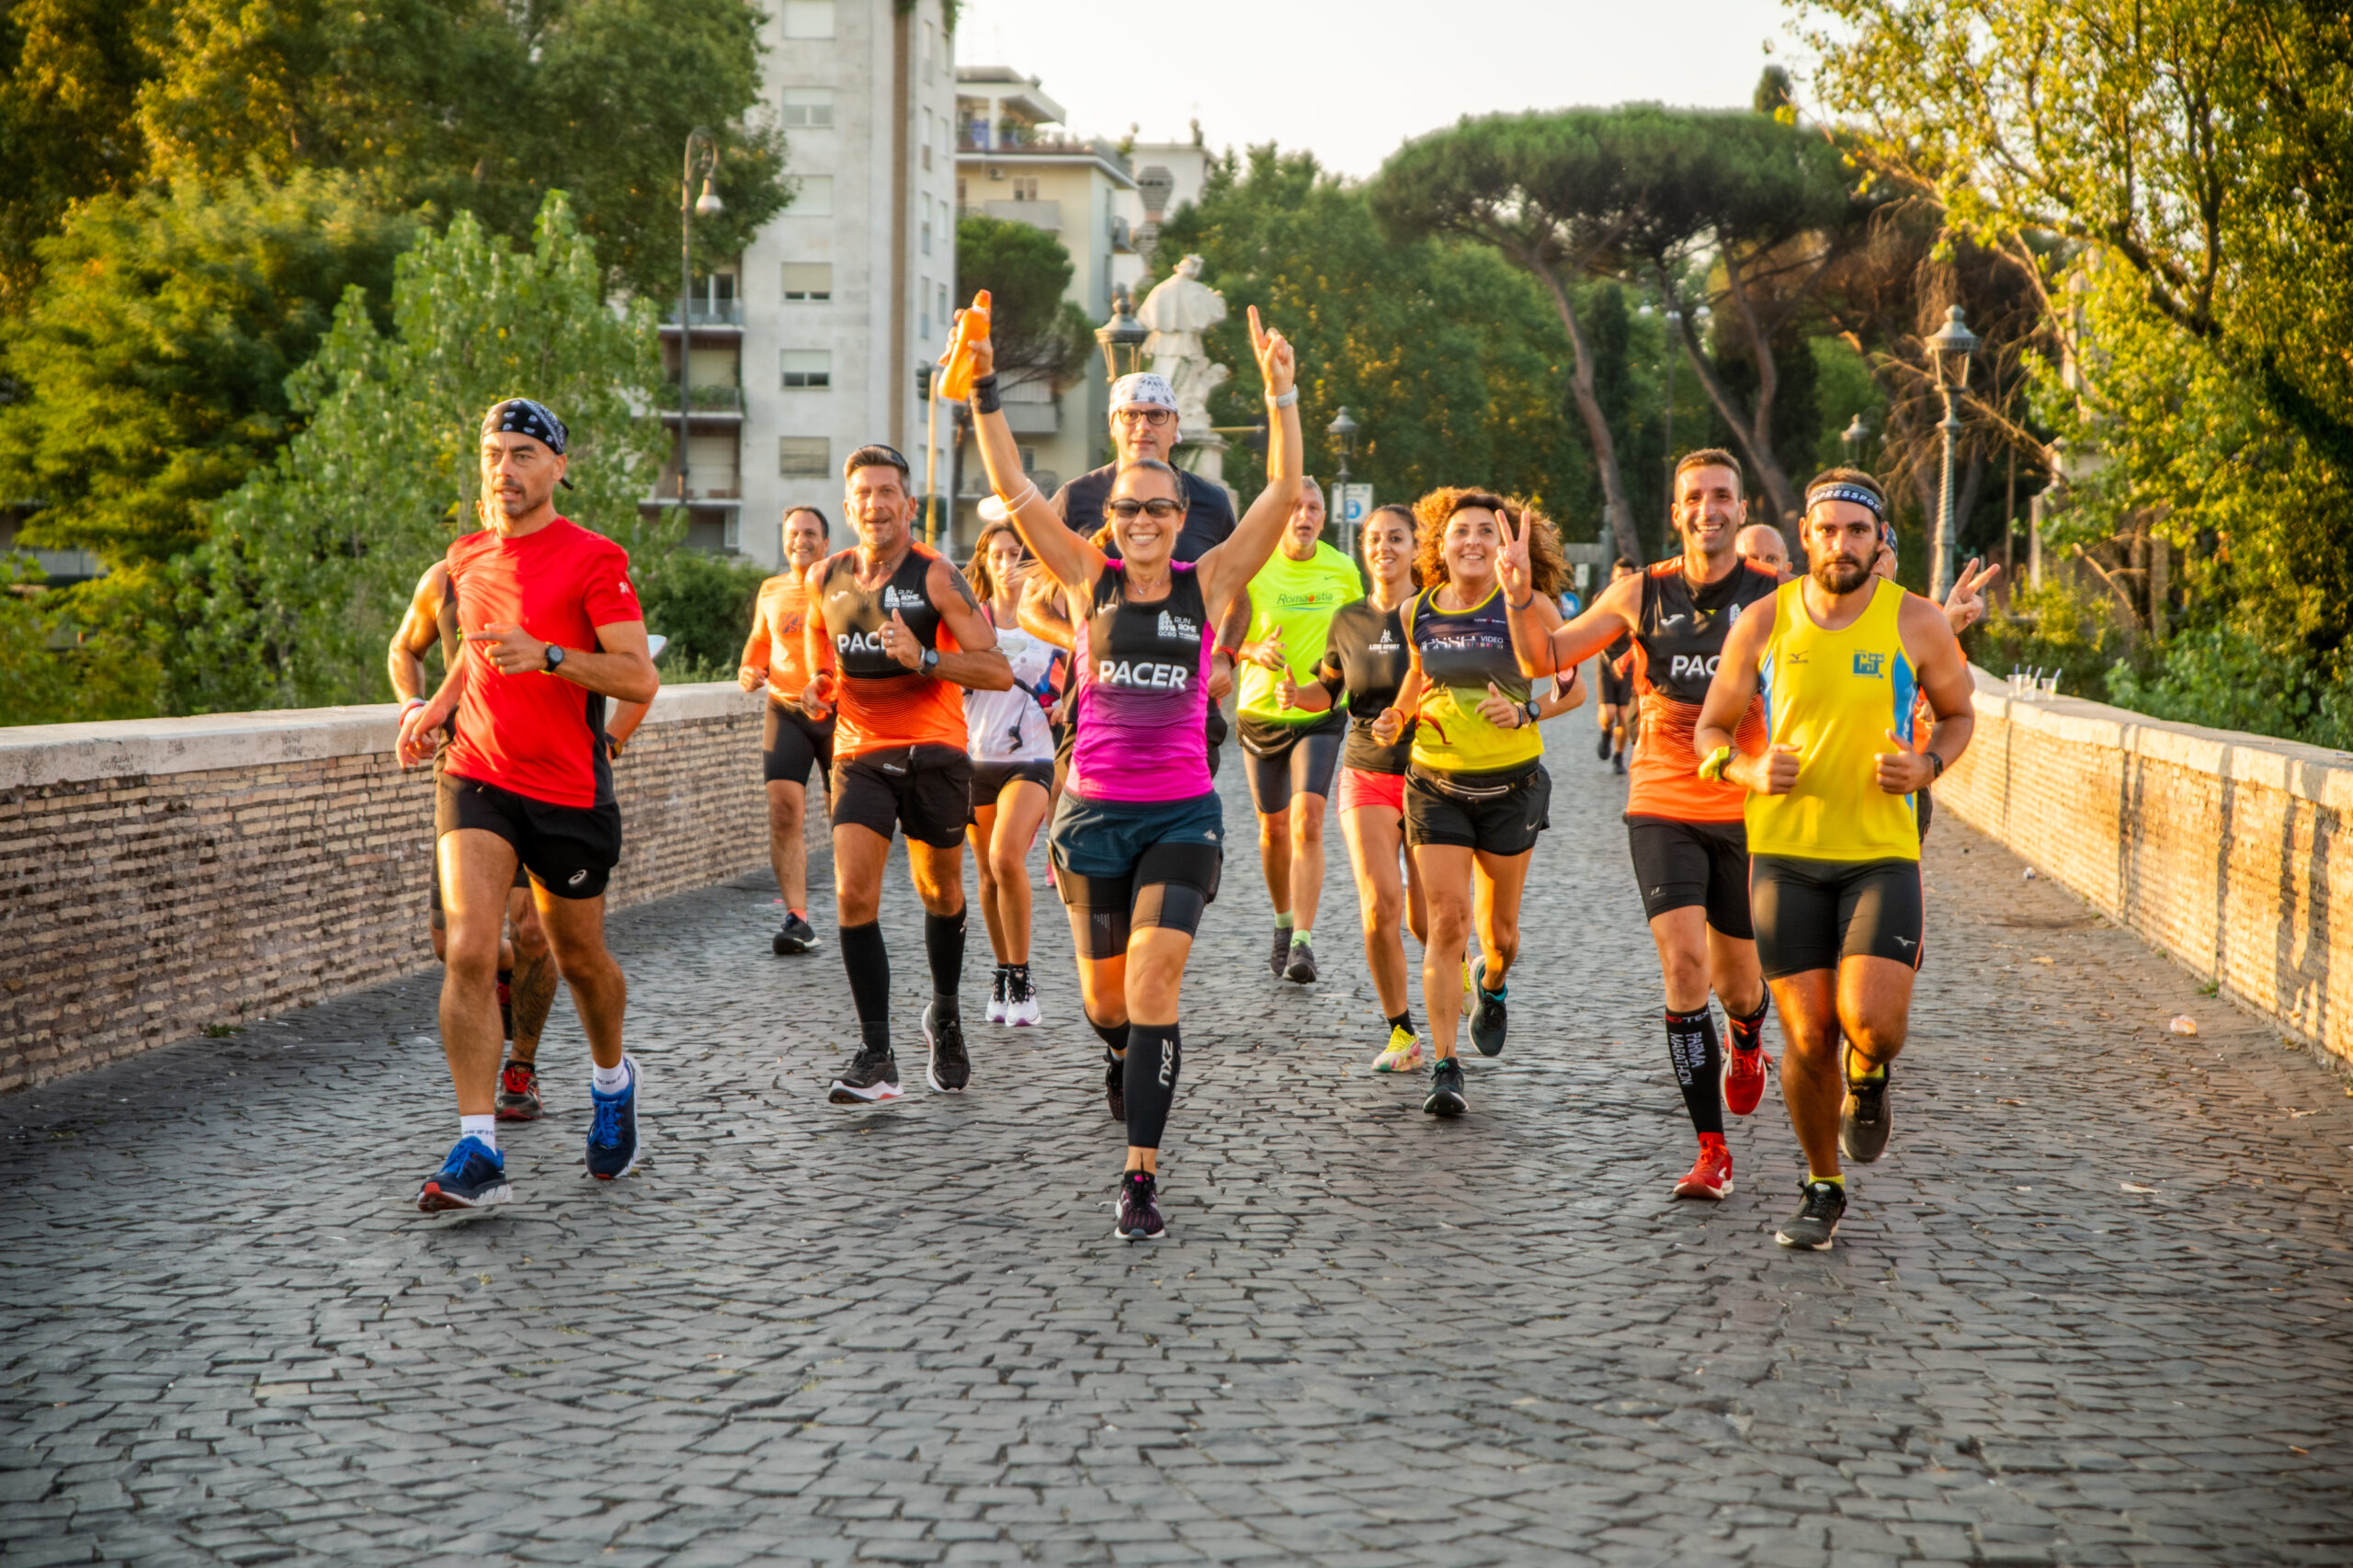 Tornano i Get Ready, gli allenamenti collettivi della Run Rome The Marathon